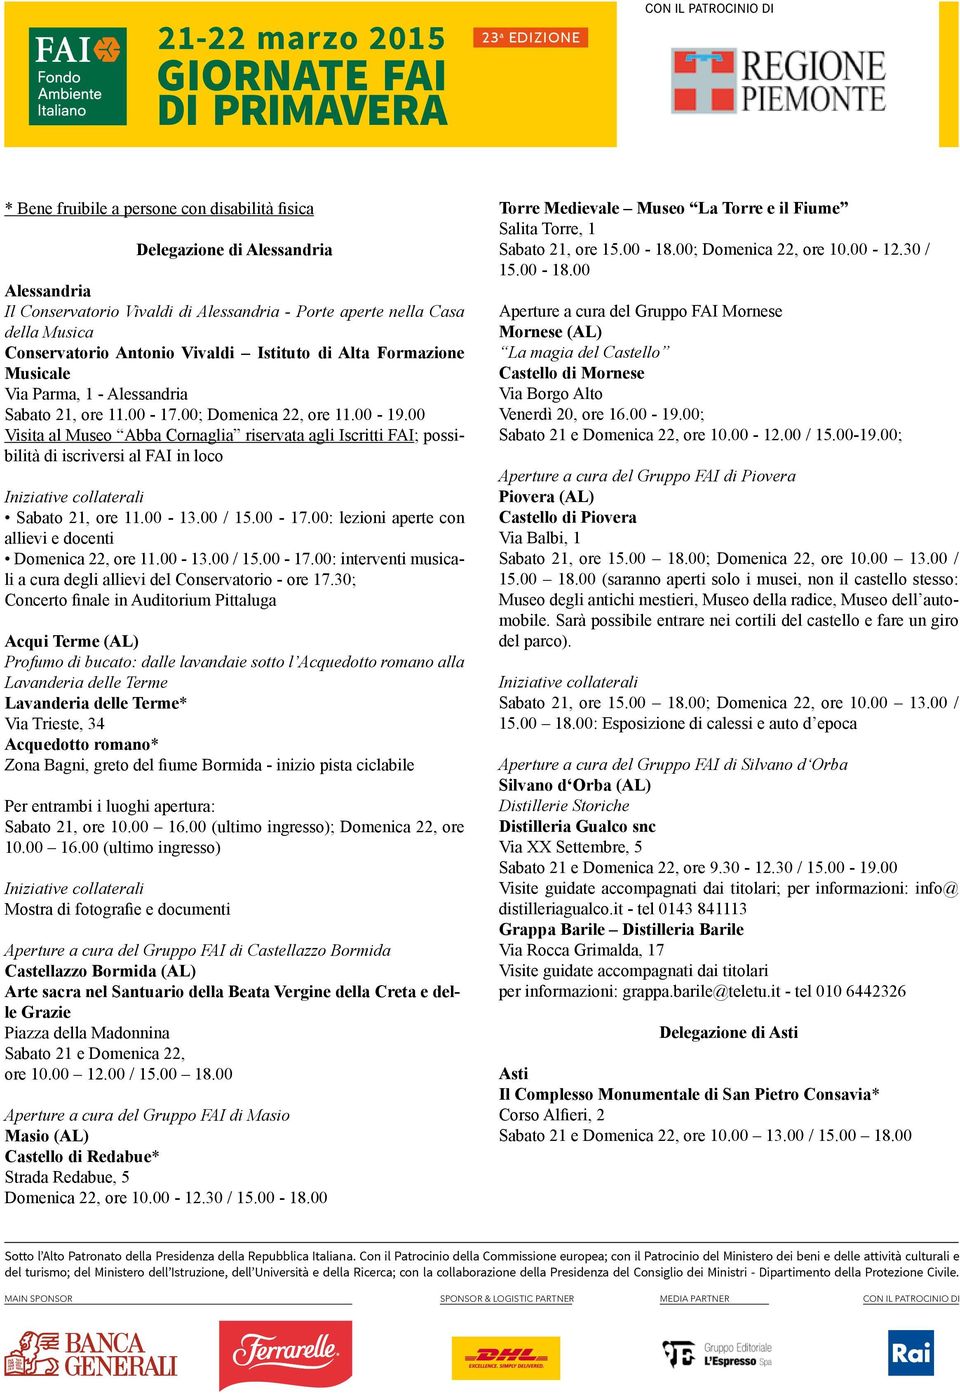 00 Visita al Museo Abba Cornaglia riservata agli Iscritti FAI; possibilità di iscriversi al FAI in loco Sabato 21, ore 11.00-13.00 / 15.00-17.